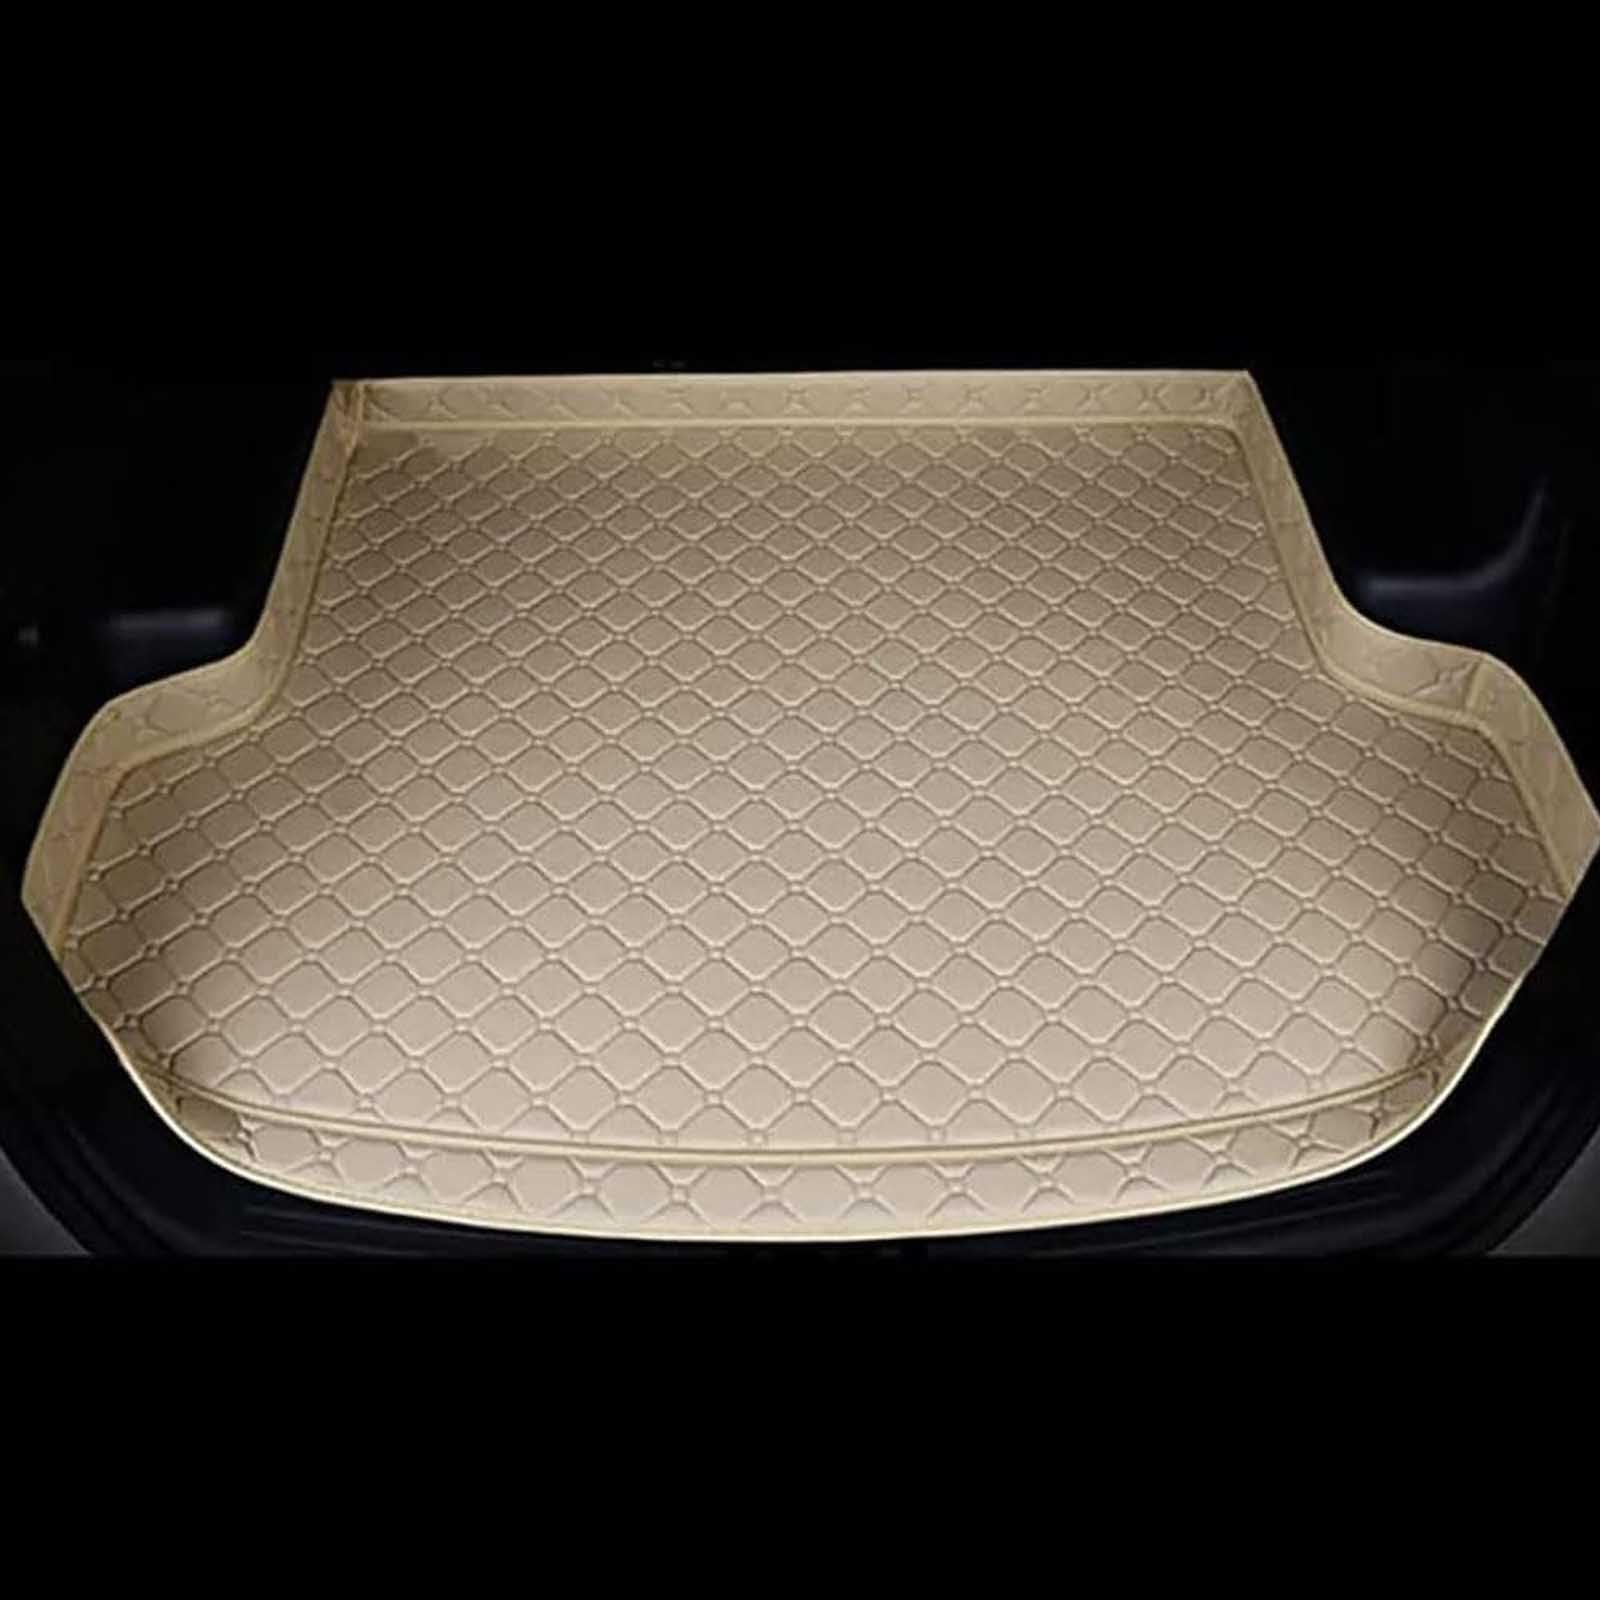 Auto Leder Kofferraummatten für Toyota Handlander 7 Seats 2009-2014, Wasserdicht Antirutsch Kofferraum Innenmatte Zubehör,B/Beige von ZXBL